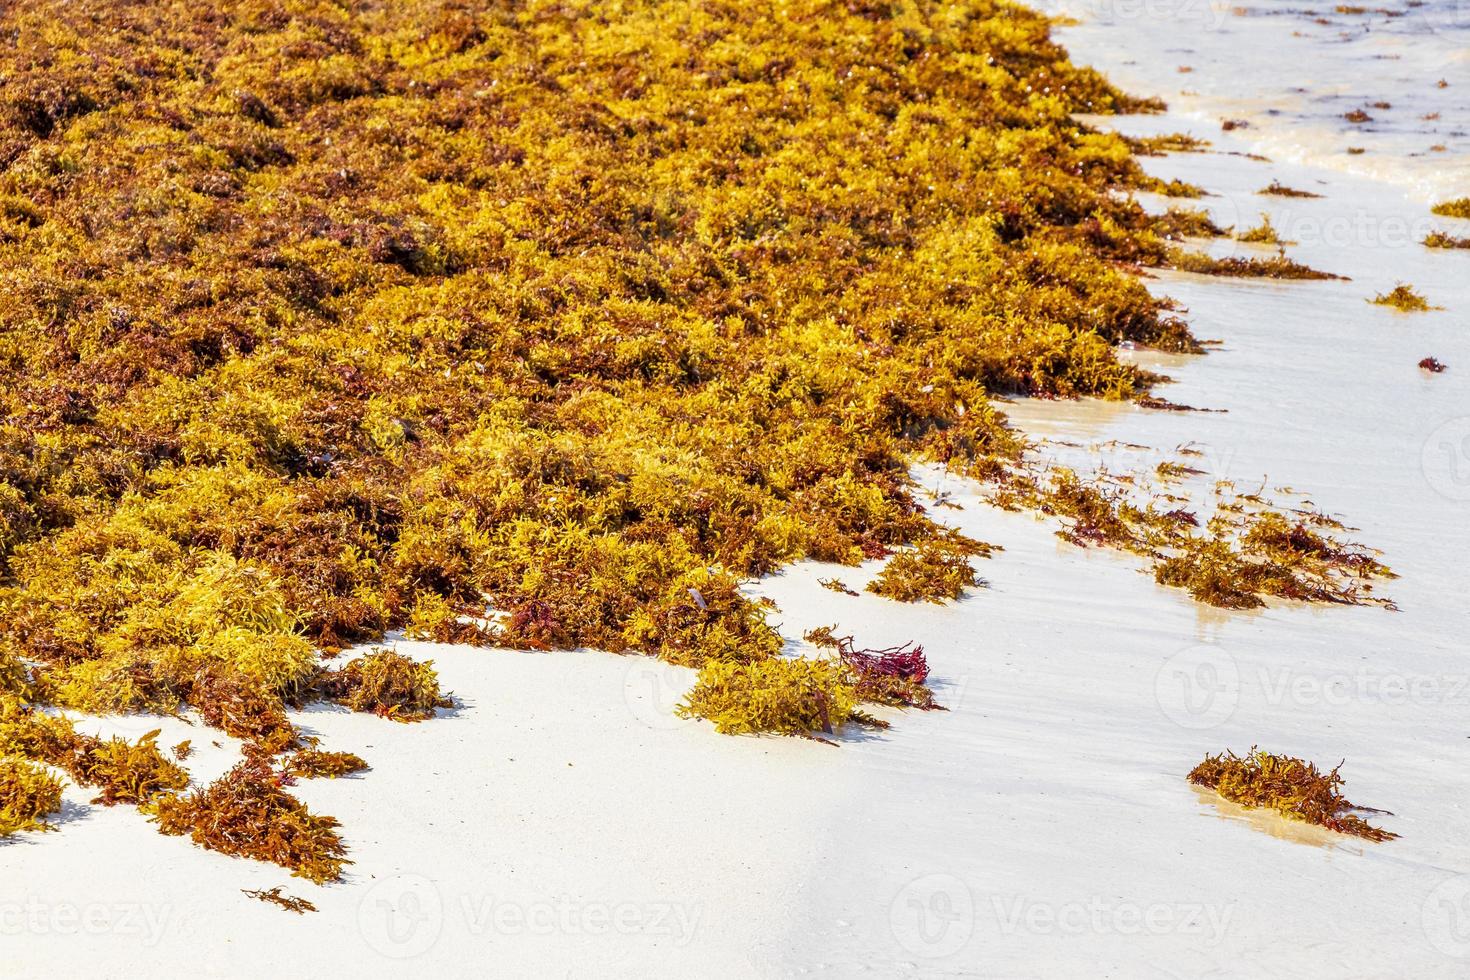 muy asqueroso sargazo de algas rojas playa playa del carmen mexico. foto